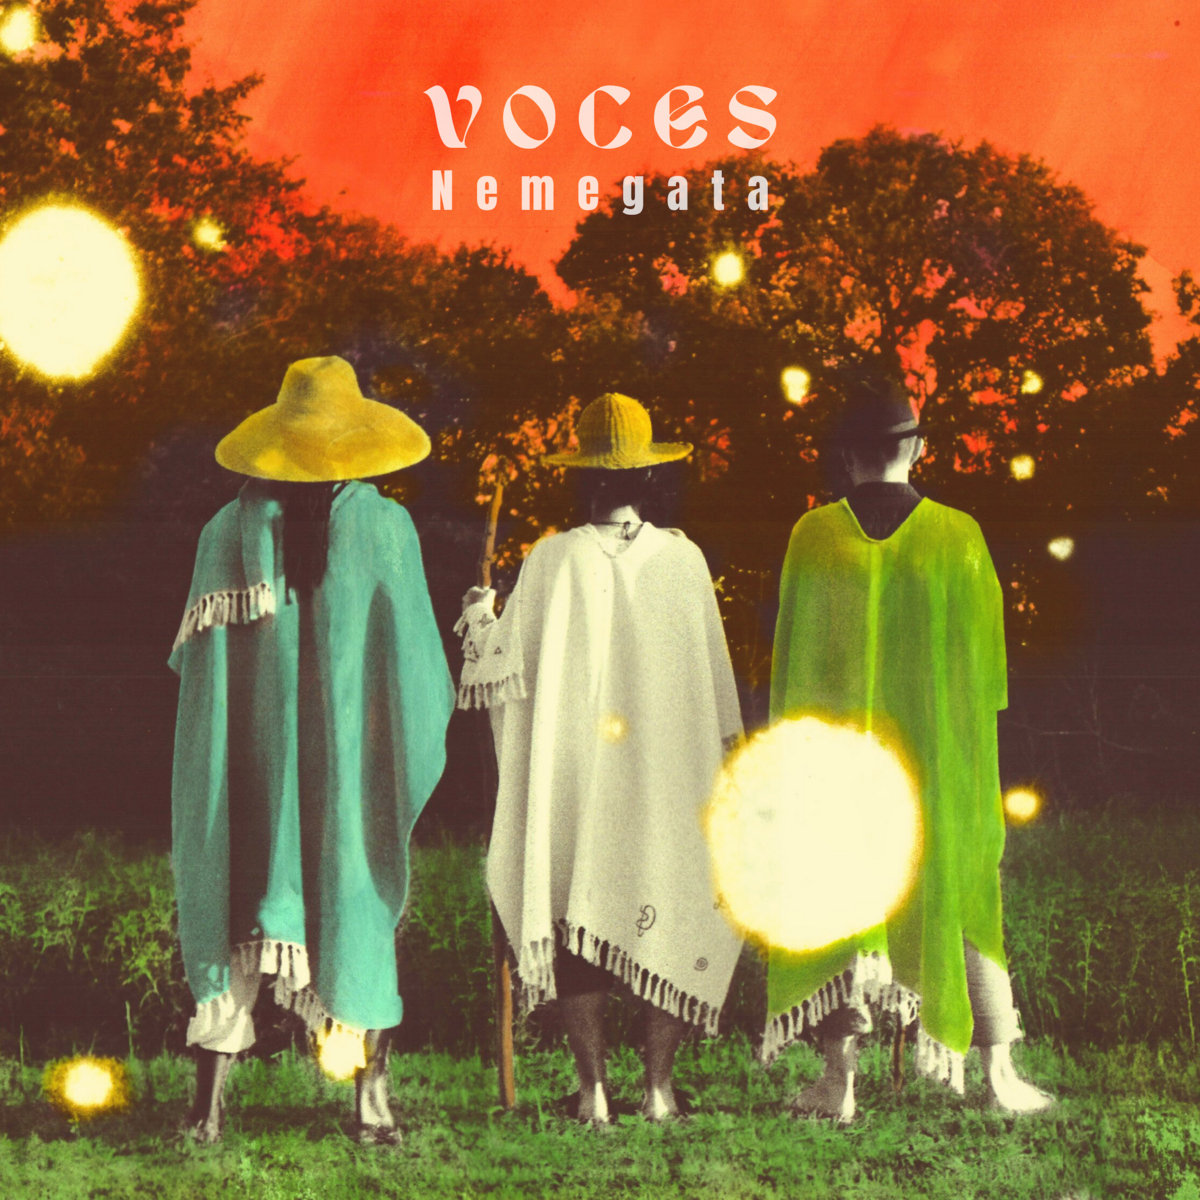 Nemegata’s latest album Voces.